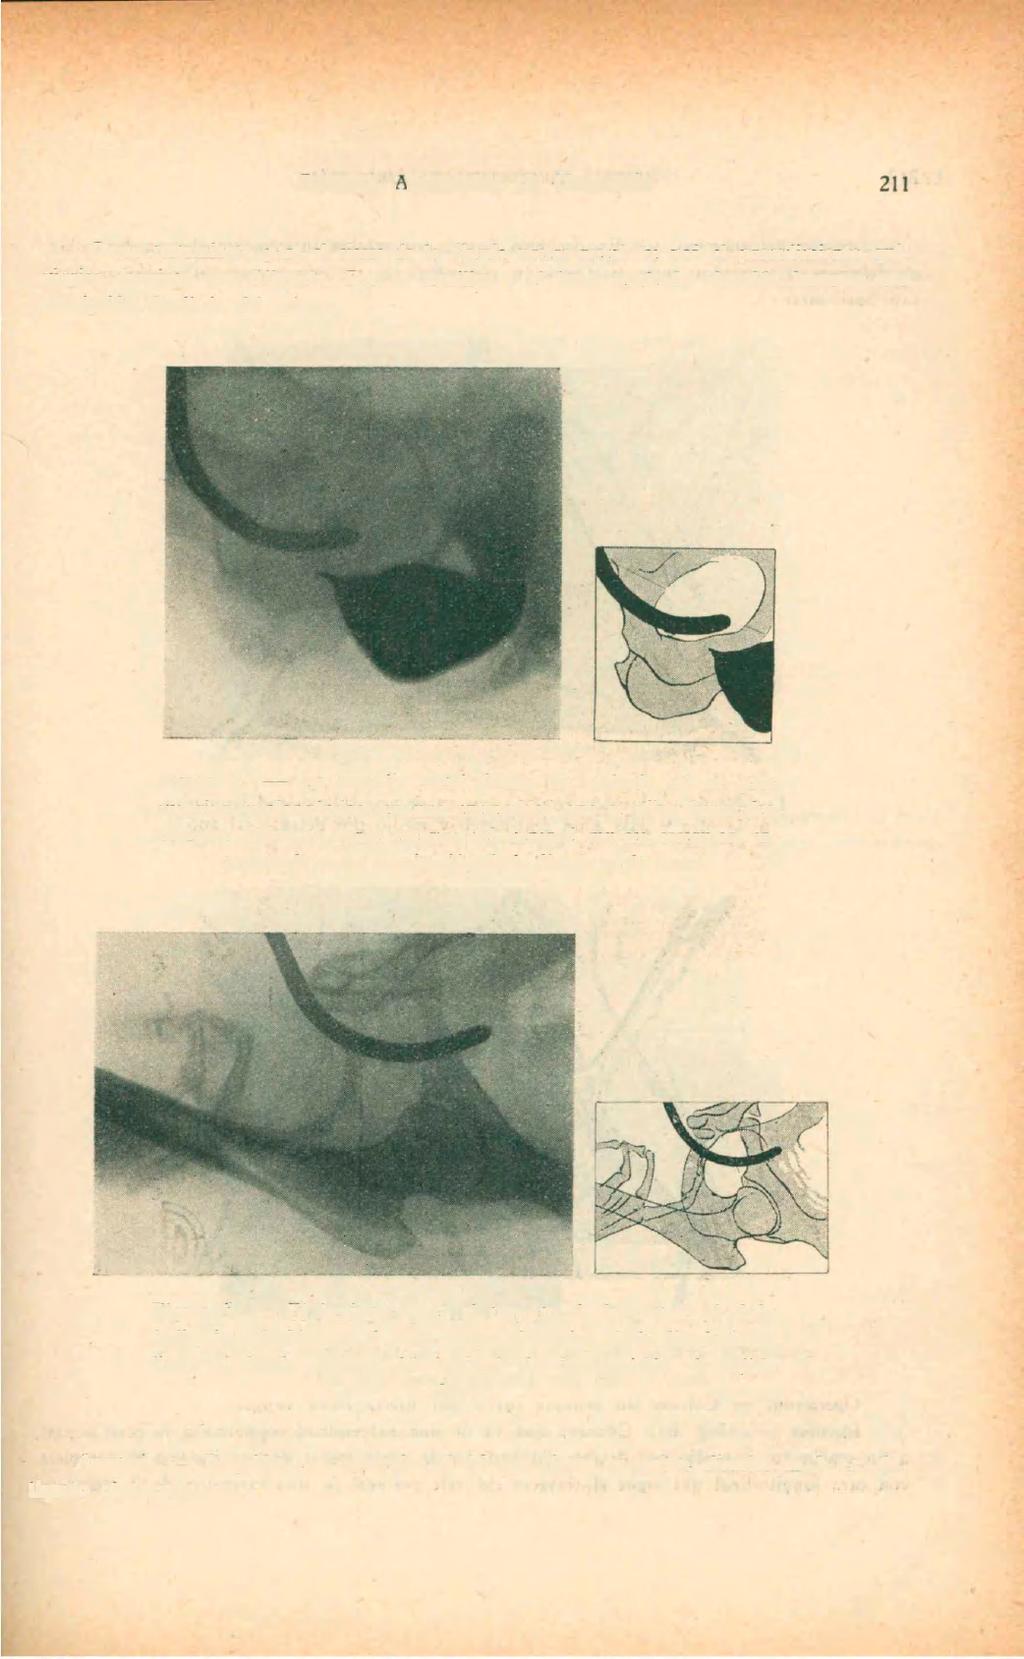 211 REVISTA ARGENTINA DE UROLOGÍA Como tratamiento para el cierre de la fístula uretro-rectal, se usó el procedimiento quirúrgico descripto por Albarrán.